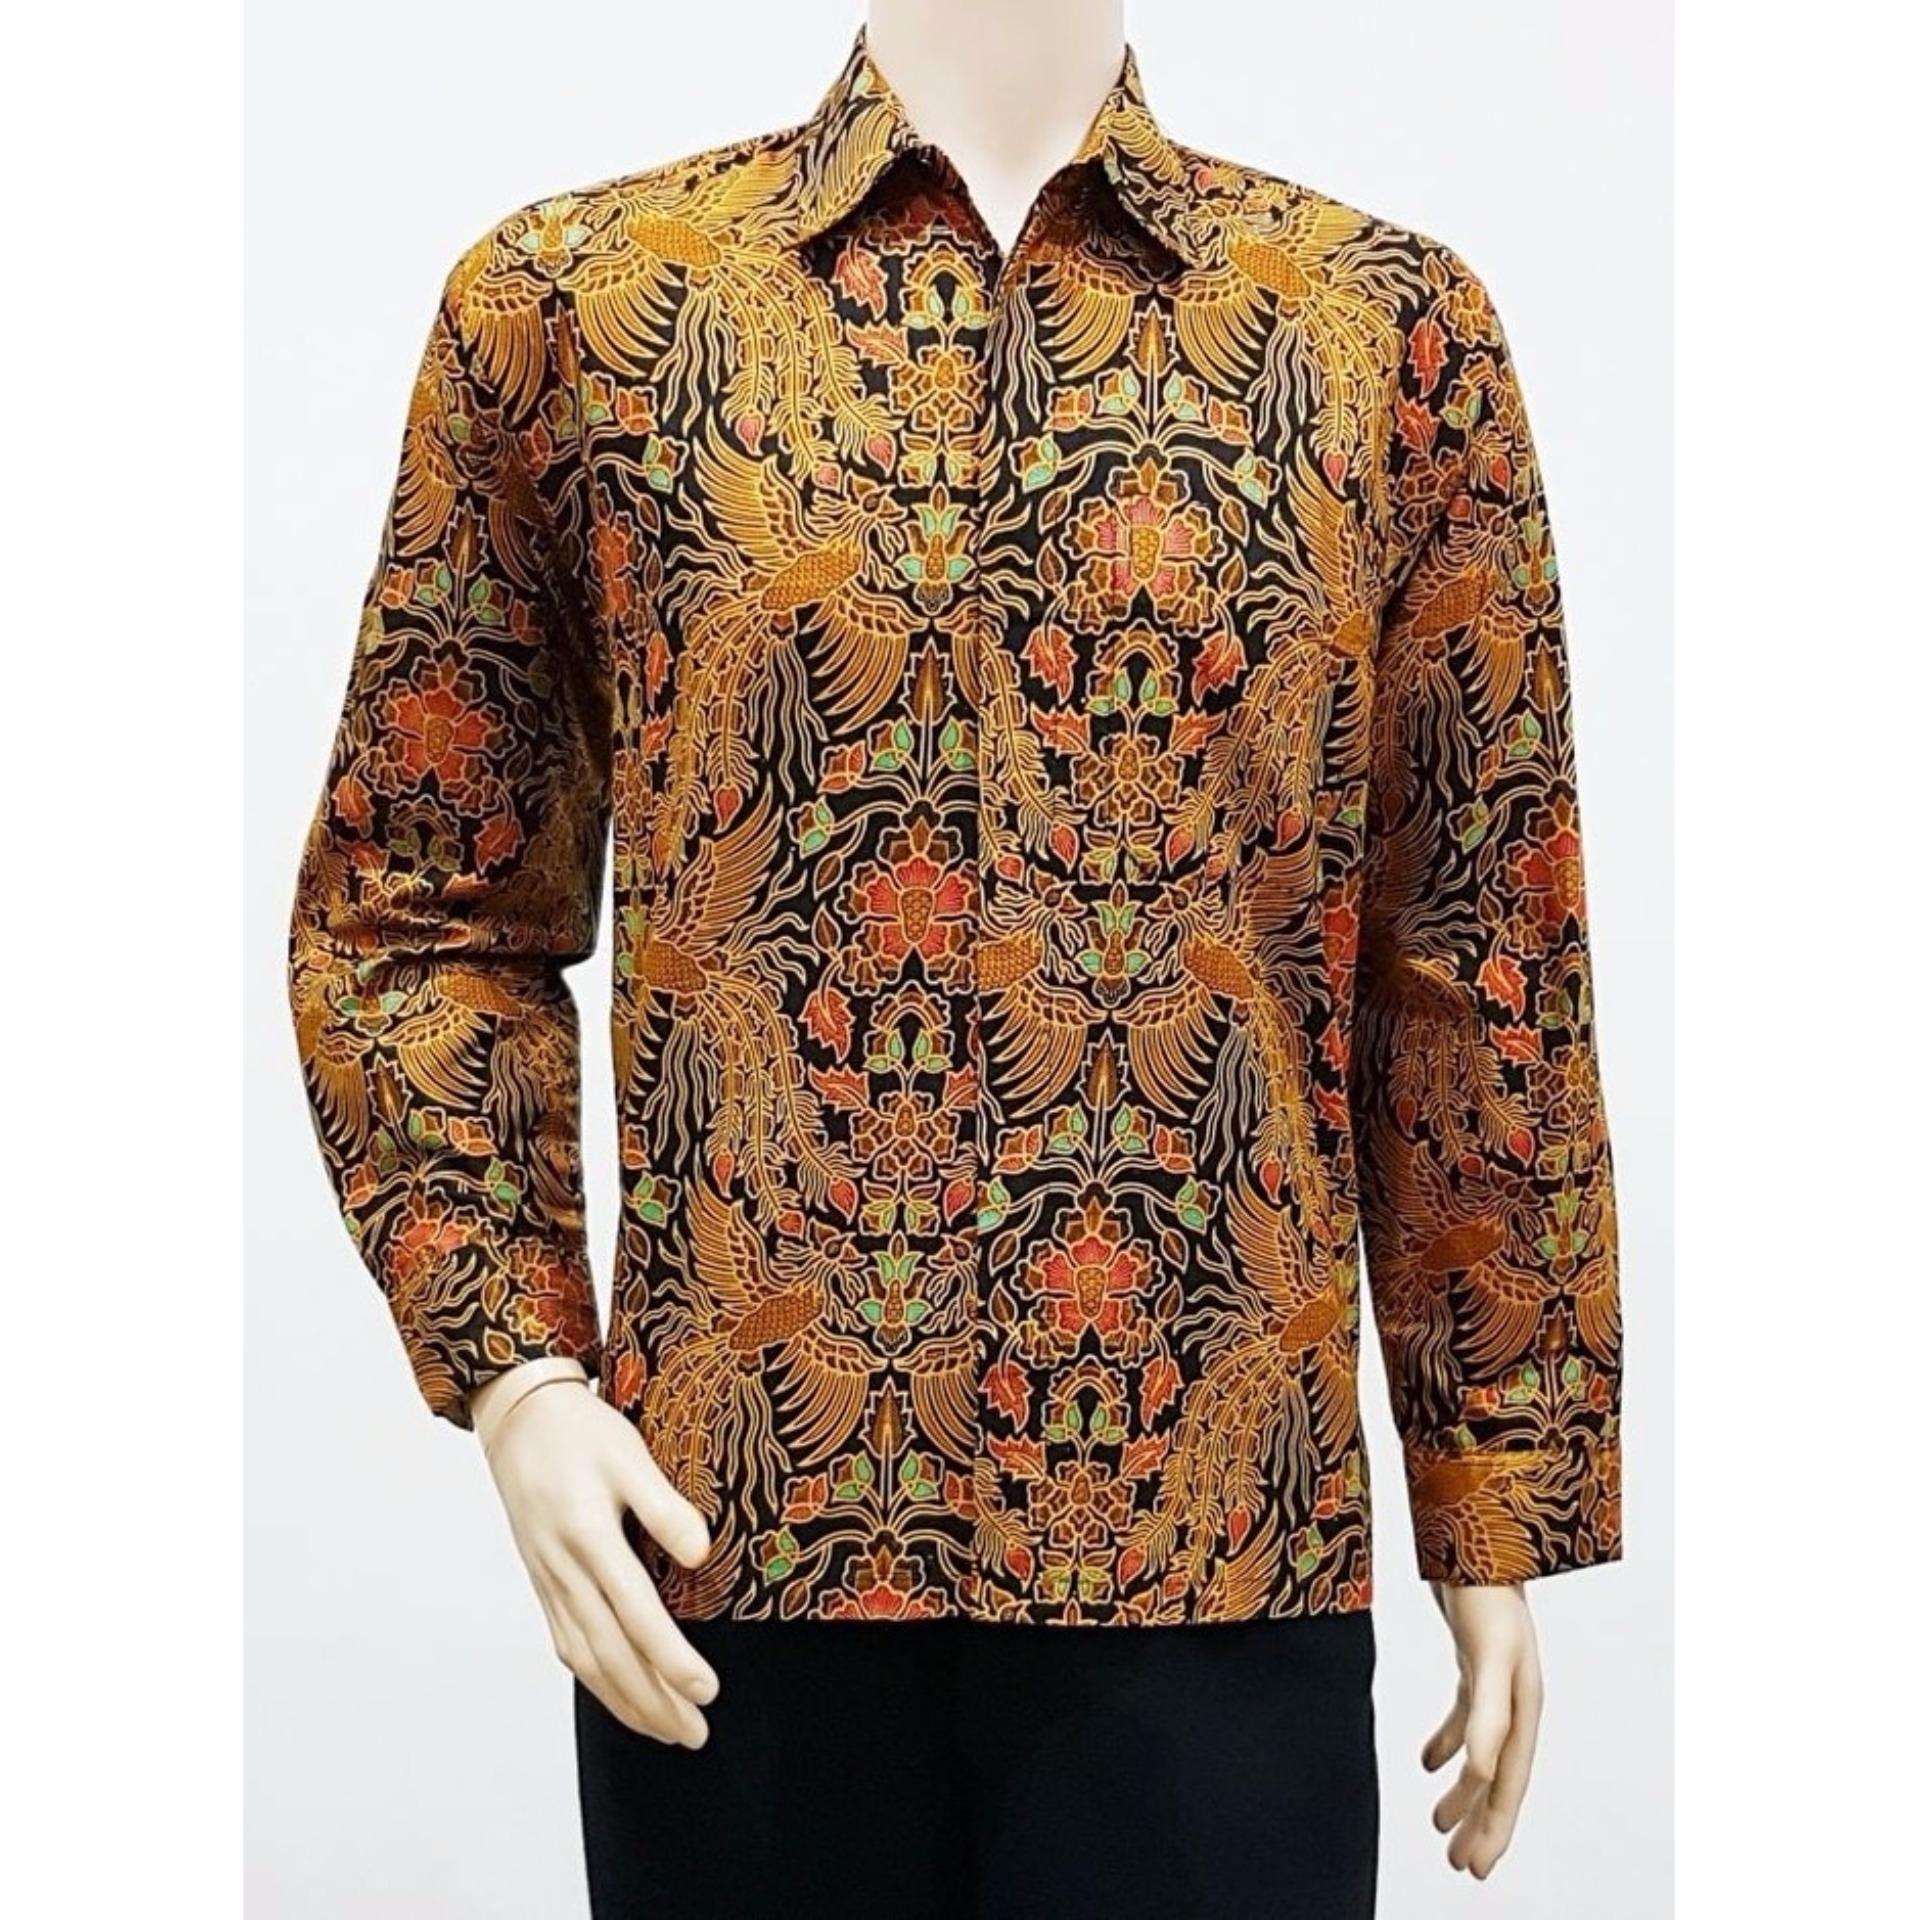  Baju  Batik  Solo Pria  Archives HARGAtBARU COM